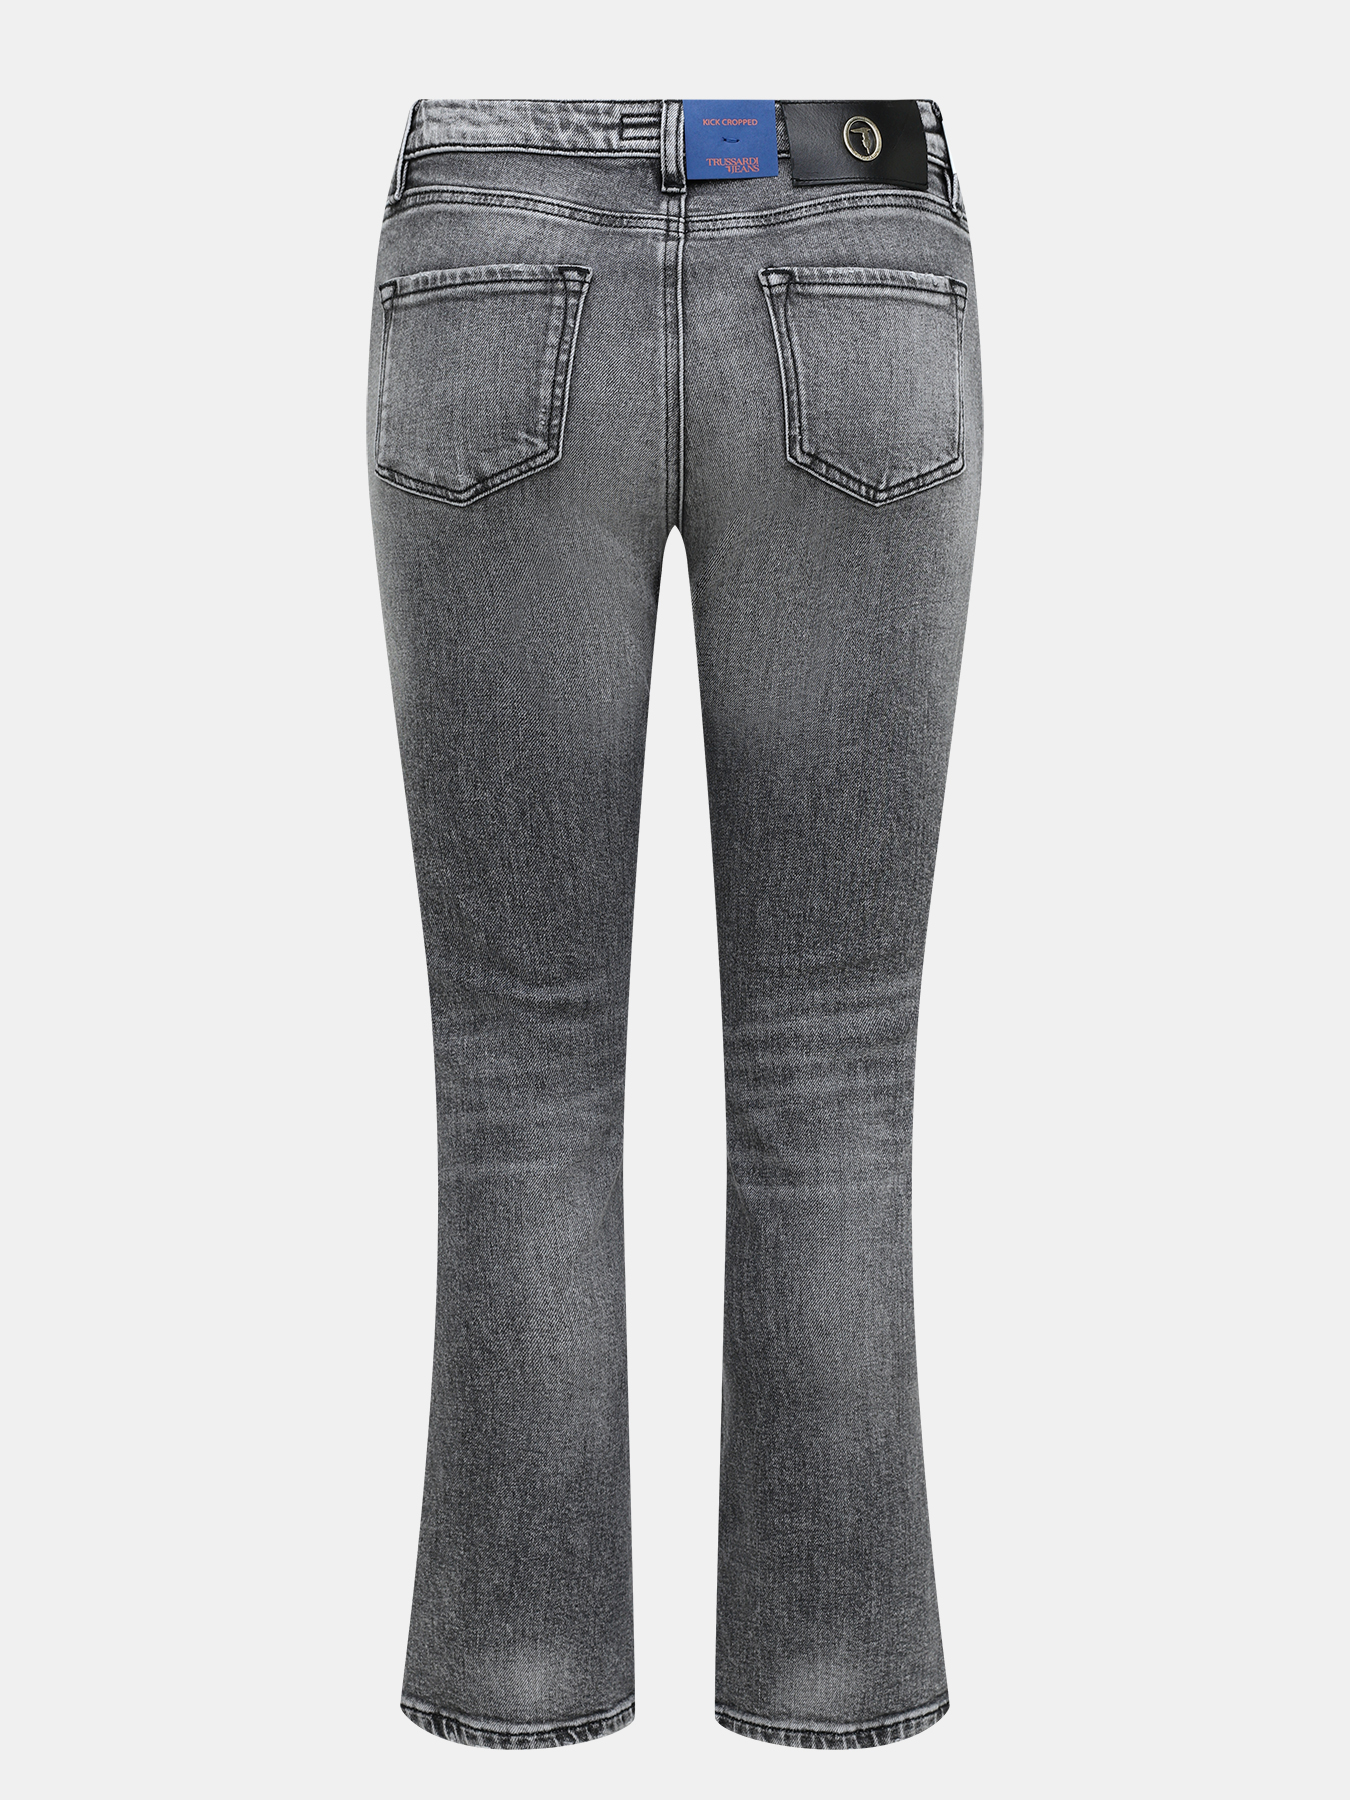 Trussardi Jeans. Серые джинсы женские. Джинсы женские серые с замками. Джинсы ниже колена женские. Mixed jeans